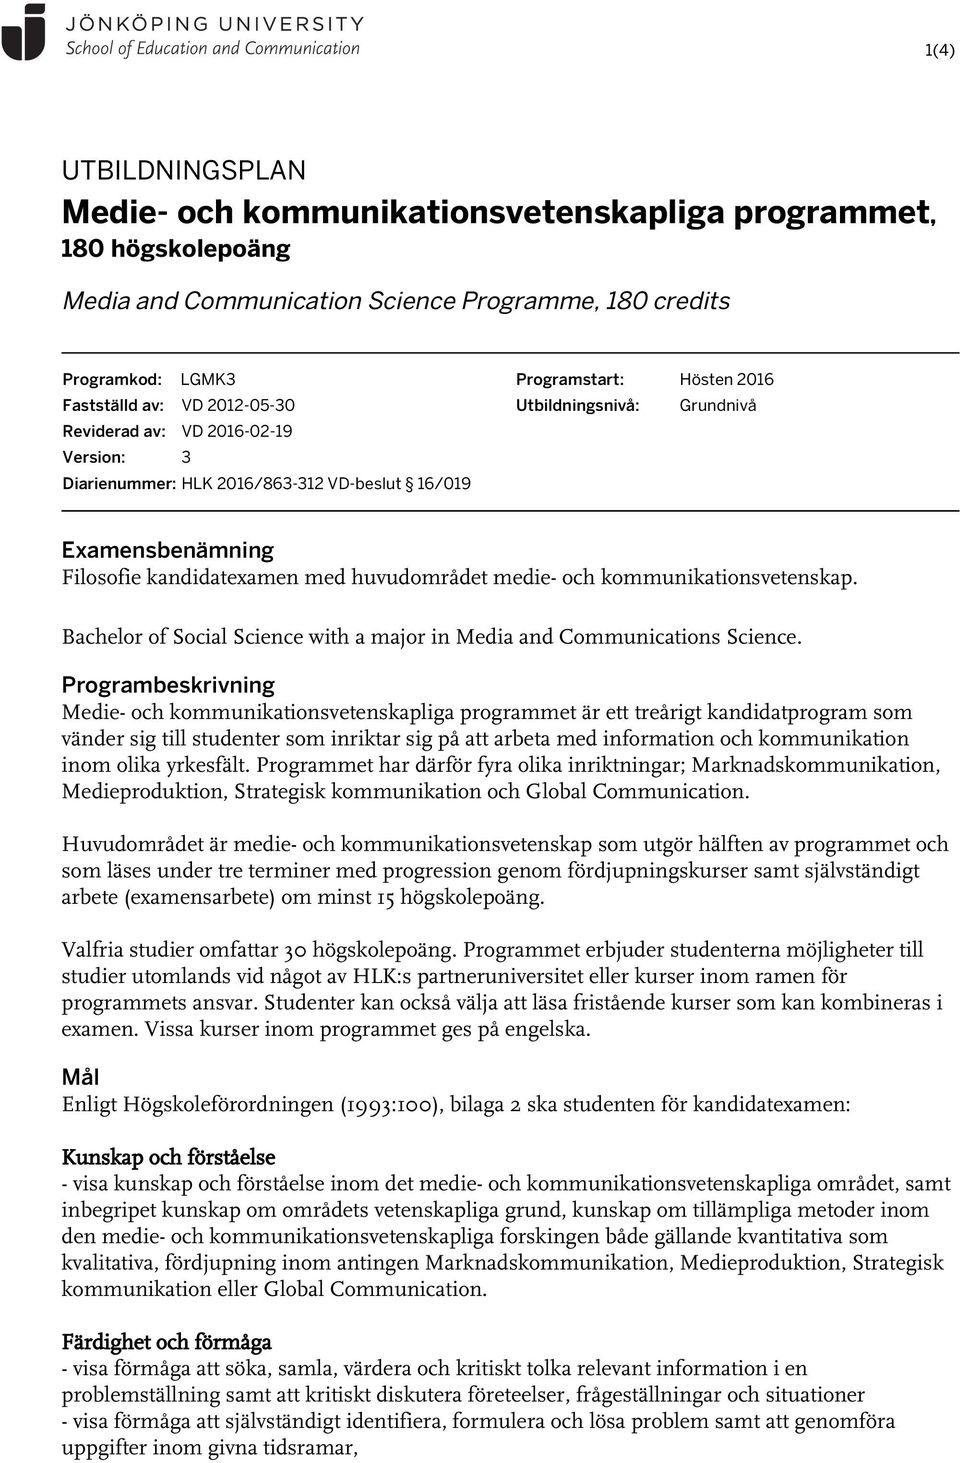 medie- och kommunikationsvetenskap. Bachelor of Social Science with a major in Media and Communications Science.